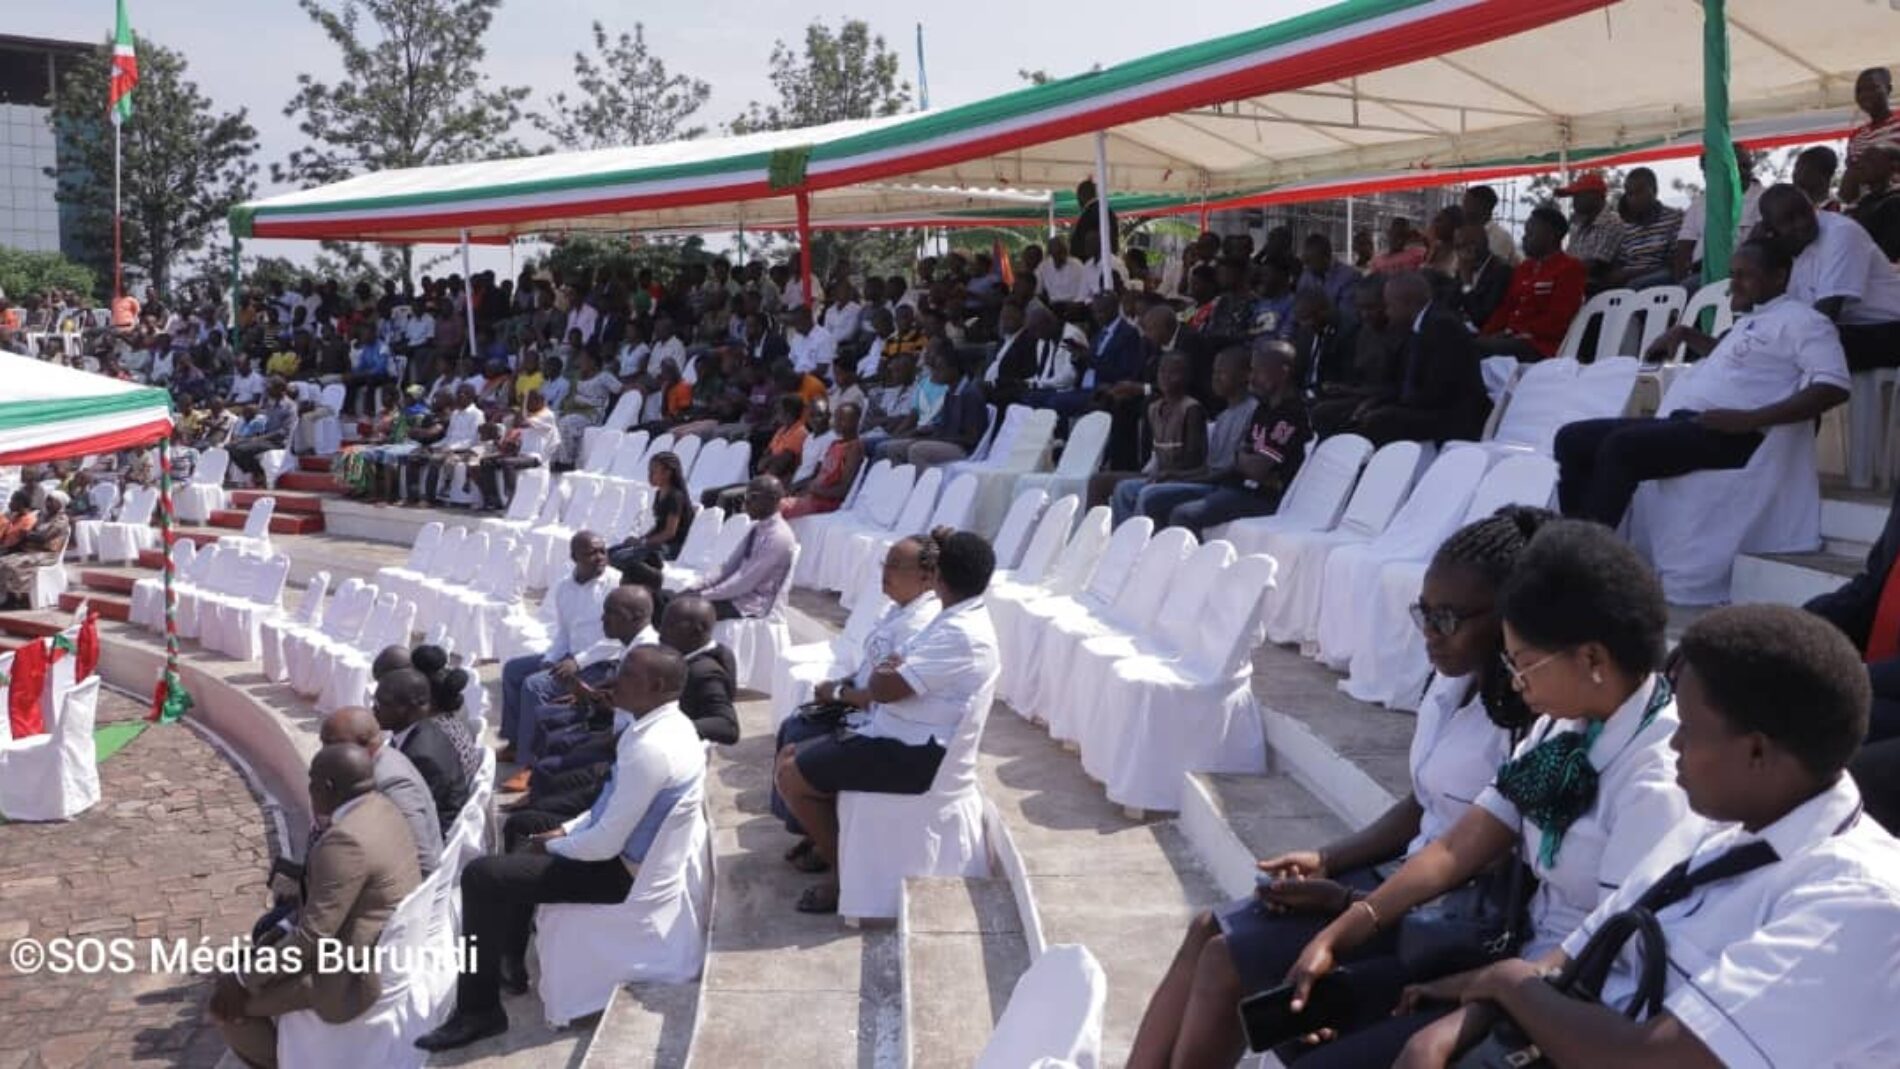 Bubanza: the celebration of national unity boycotted